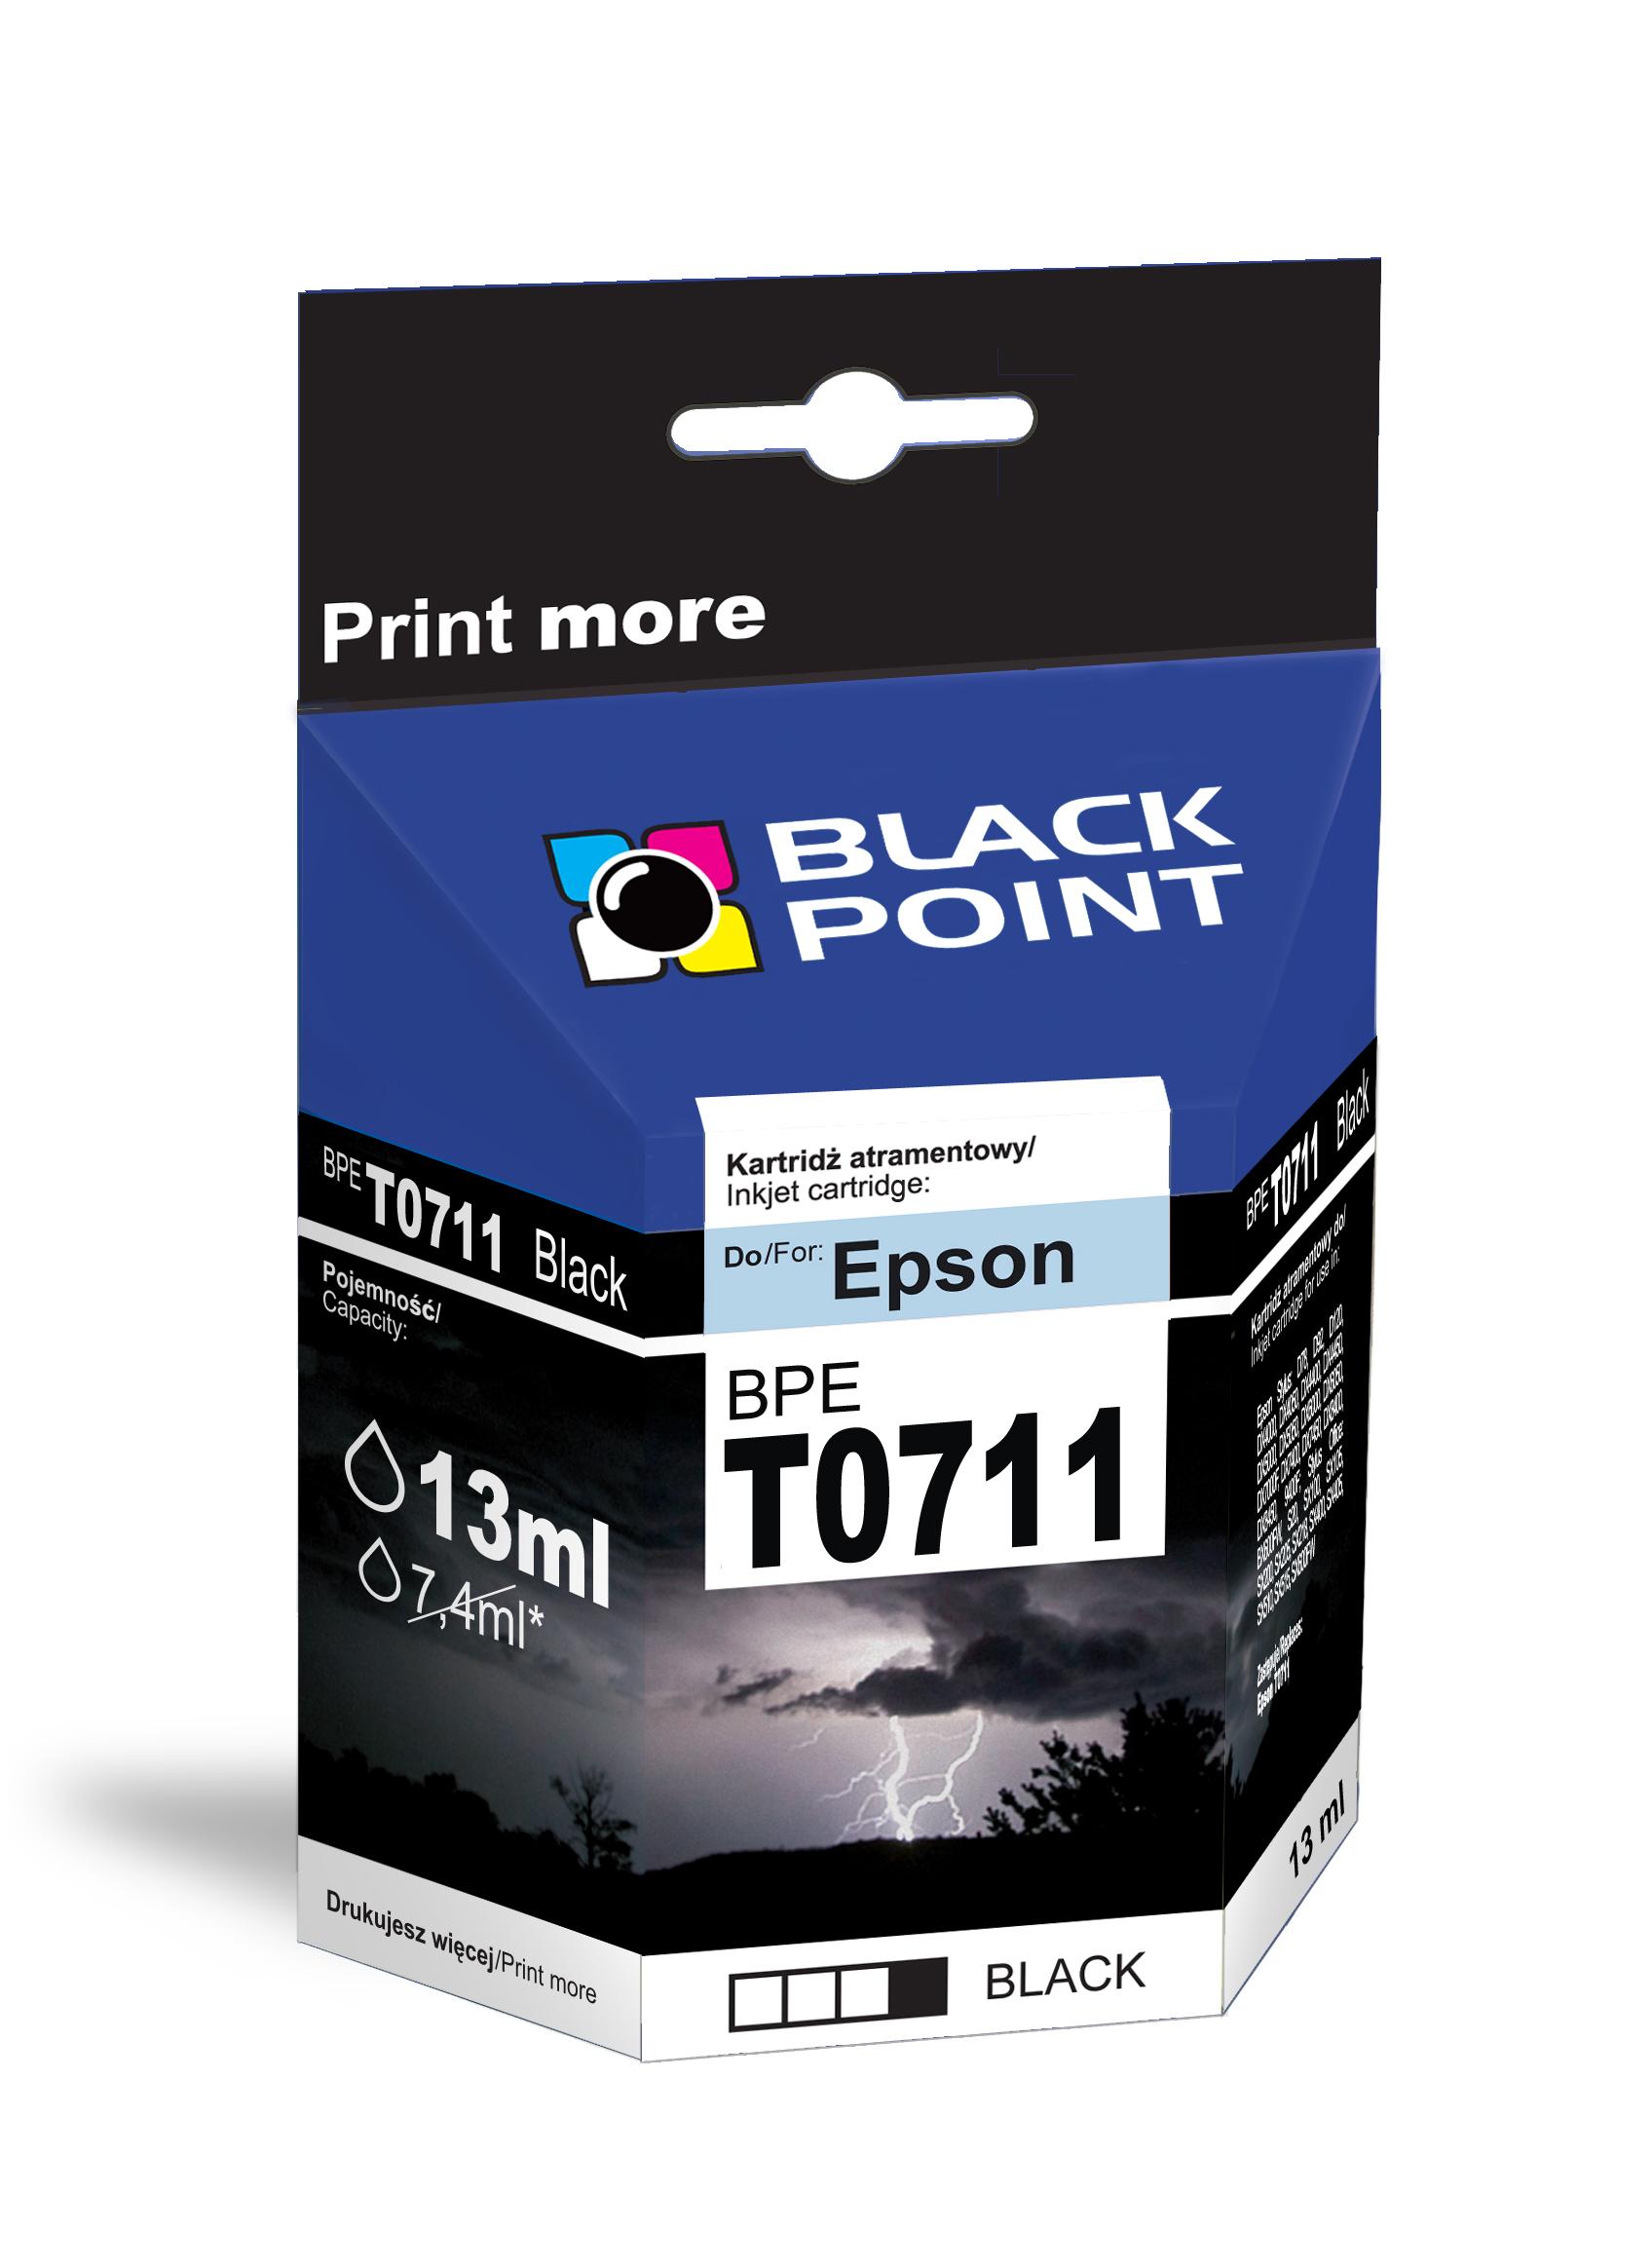 CMYK - Black Point tusz BPET0711 zastępuje Epson T0711, czarny